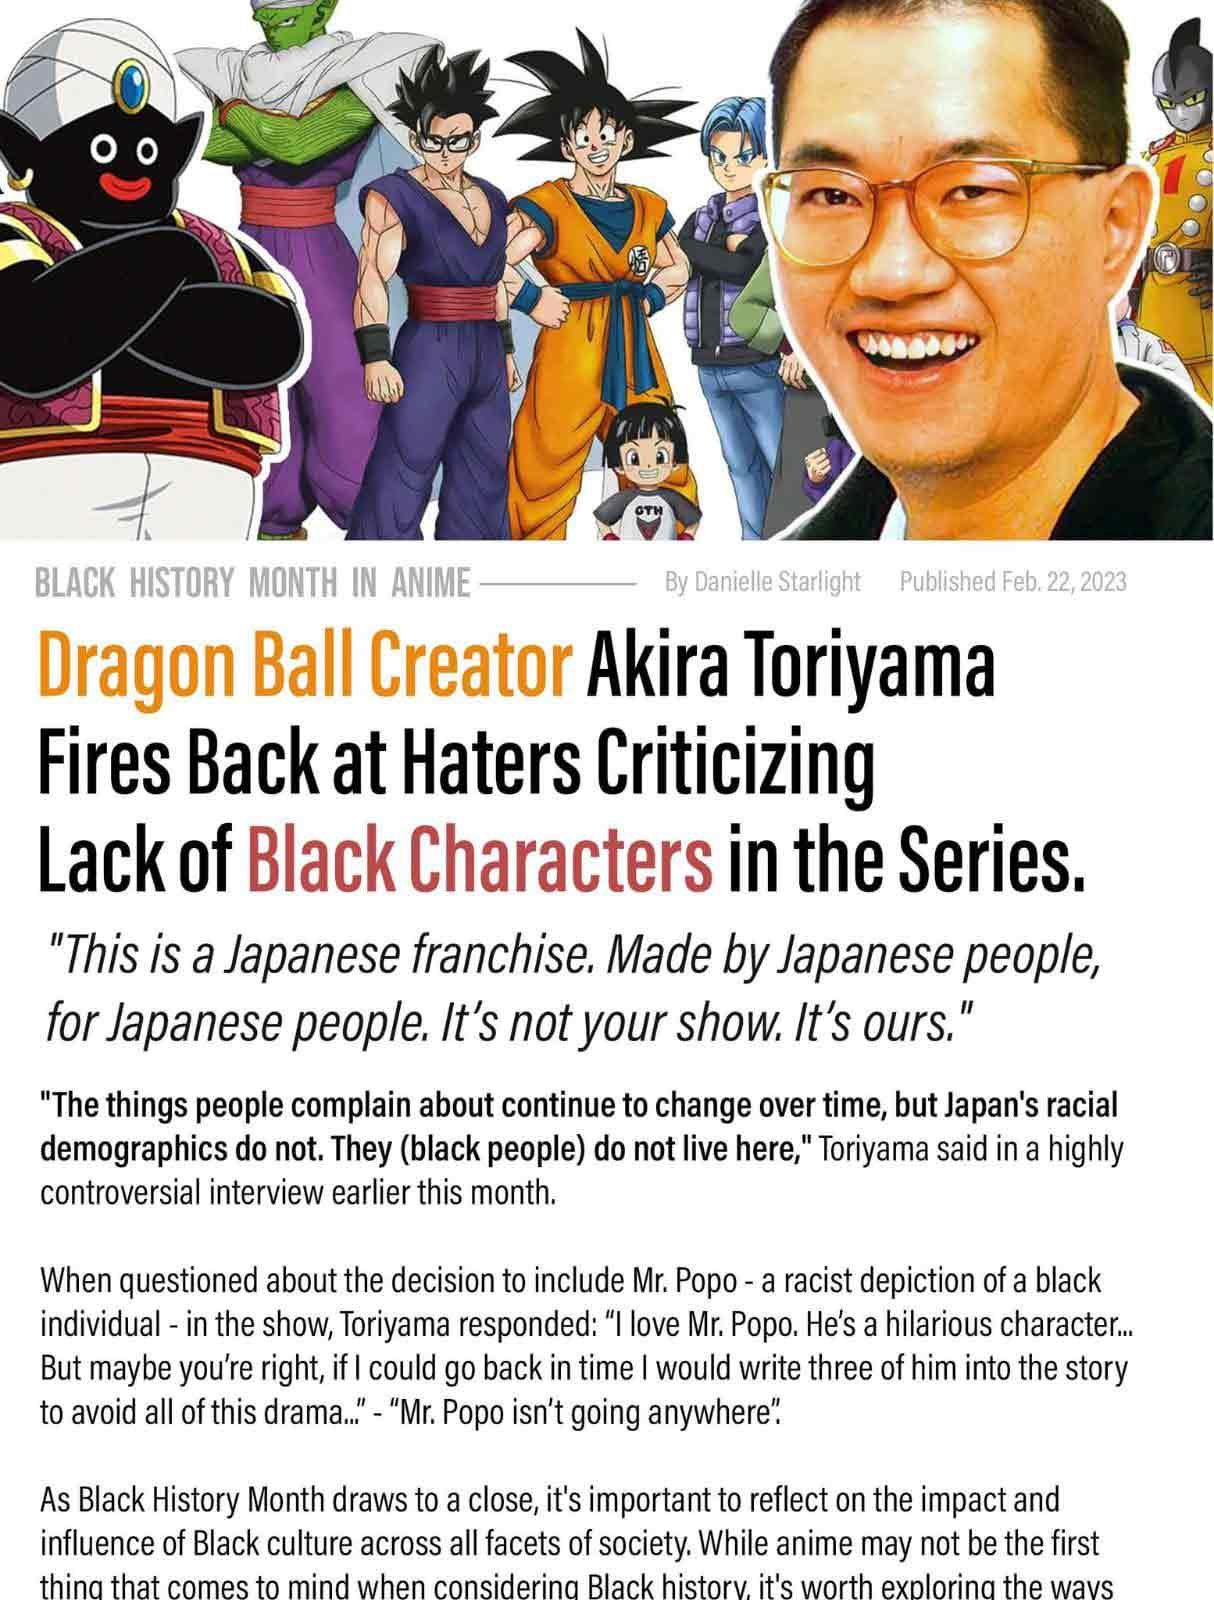 Suposta entrevista de Akira Toriyama que circulou pela internet.